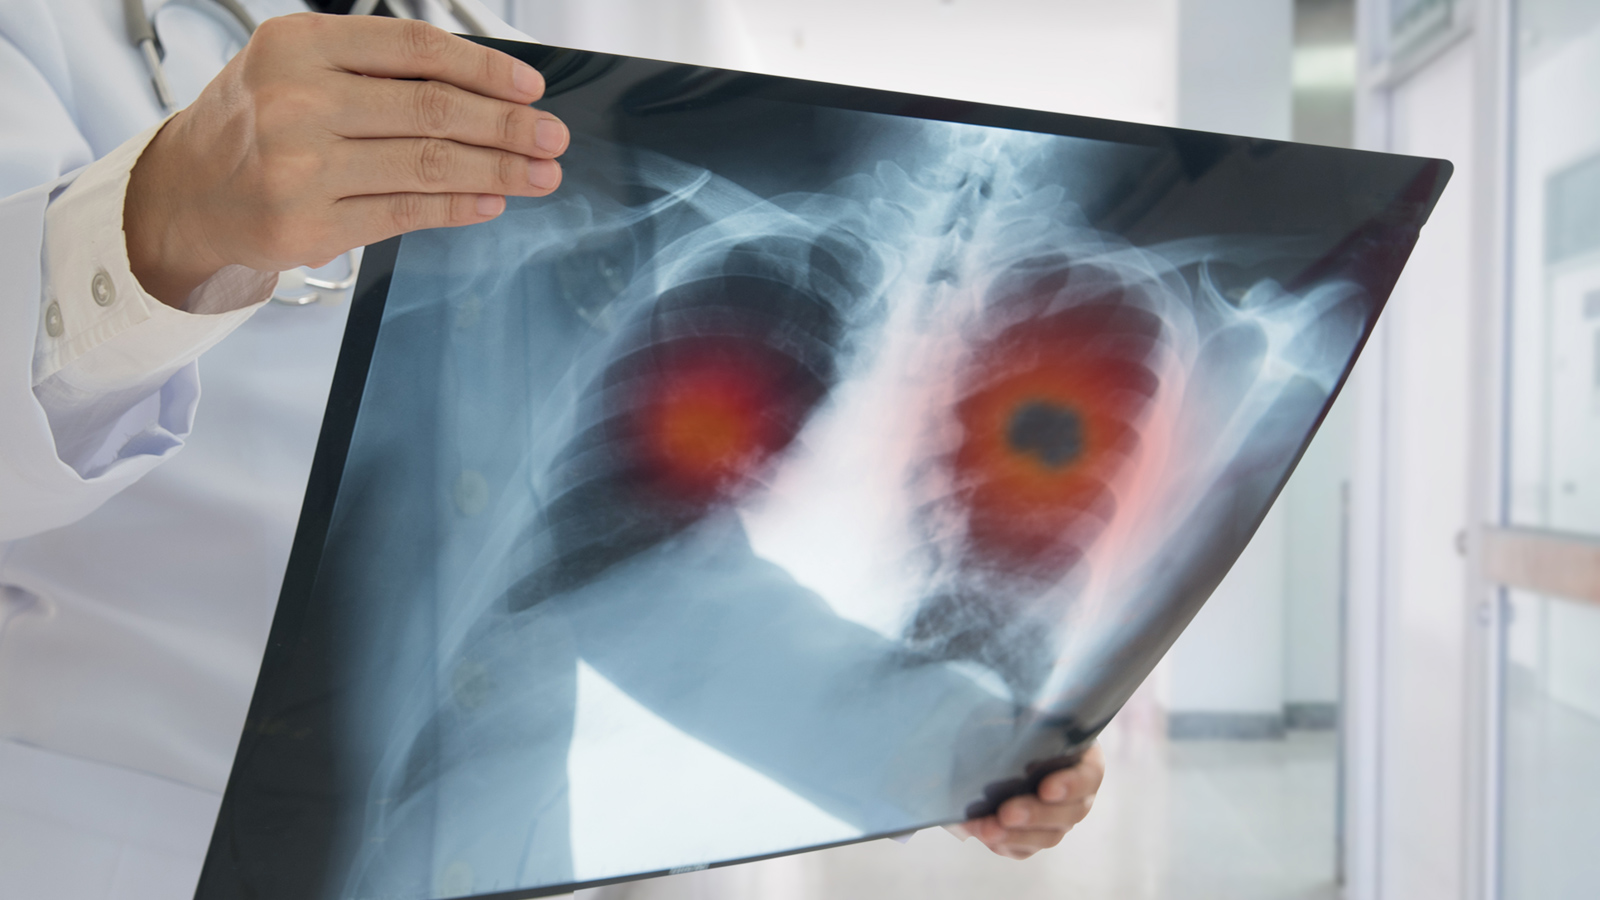 Ngay khi bị phát hiện mắc bệnh ung thư phổi, nhiều bệnh nhân phải đối diện với “án tử” vì bệnh đã ở giai đoạn cuối. Đó là lý do các chuyên gia khuyến khích nên tầm soát ung thư phổi càng sớm càng tốt. 